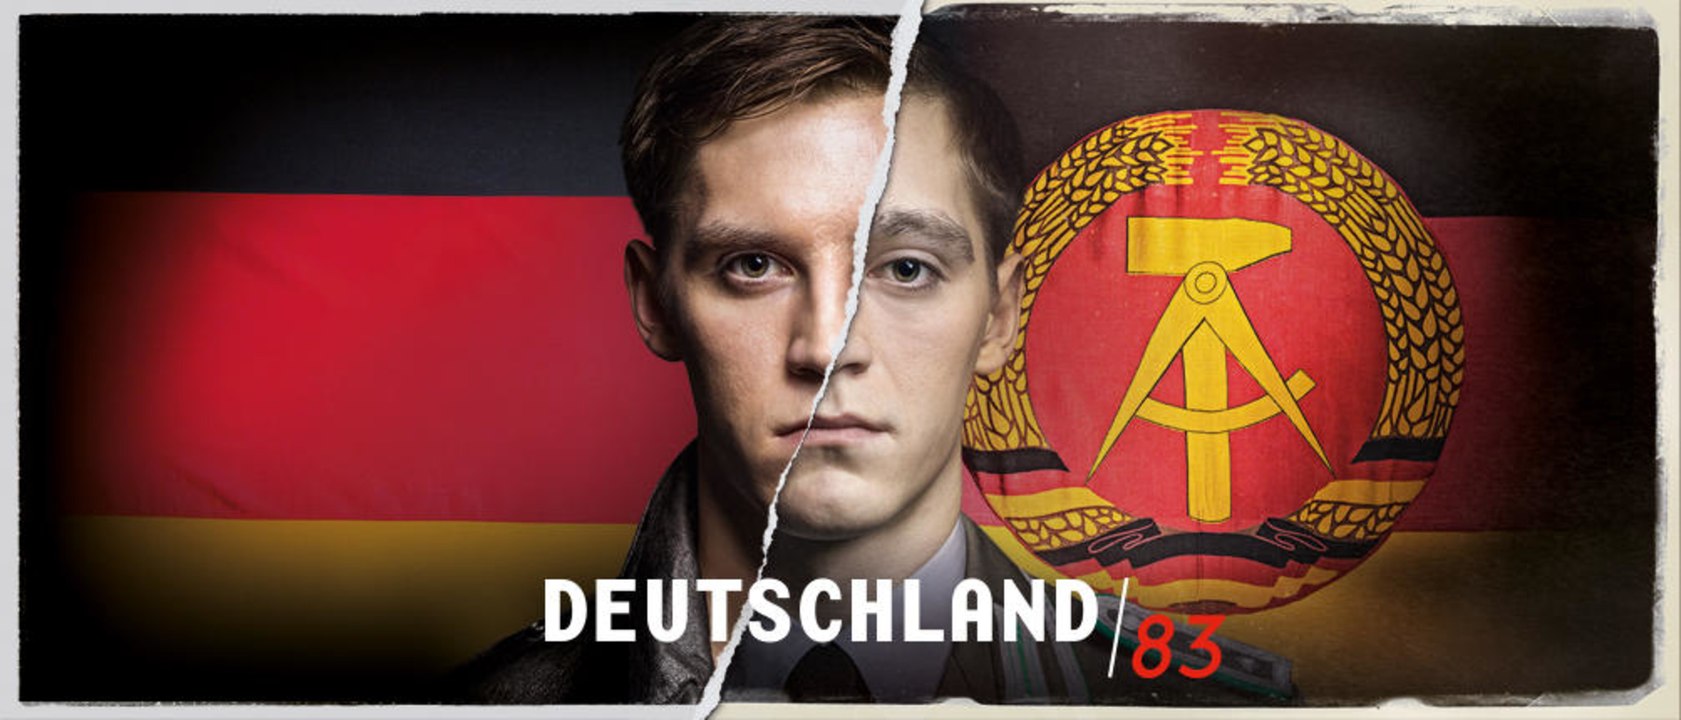 Deutschland 83 - S01 Trailer Auf welcher Seite stehst du? (Deutsch) HD